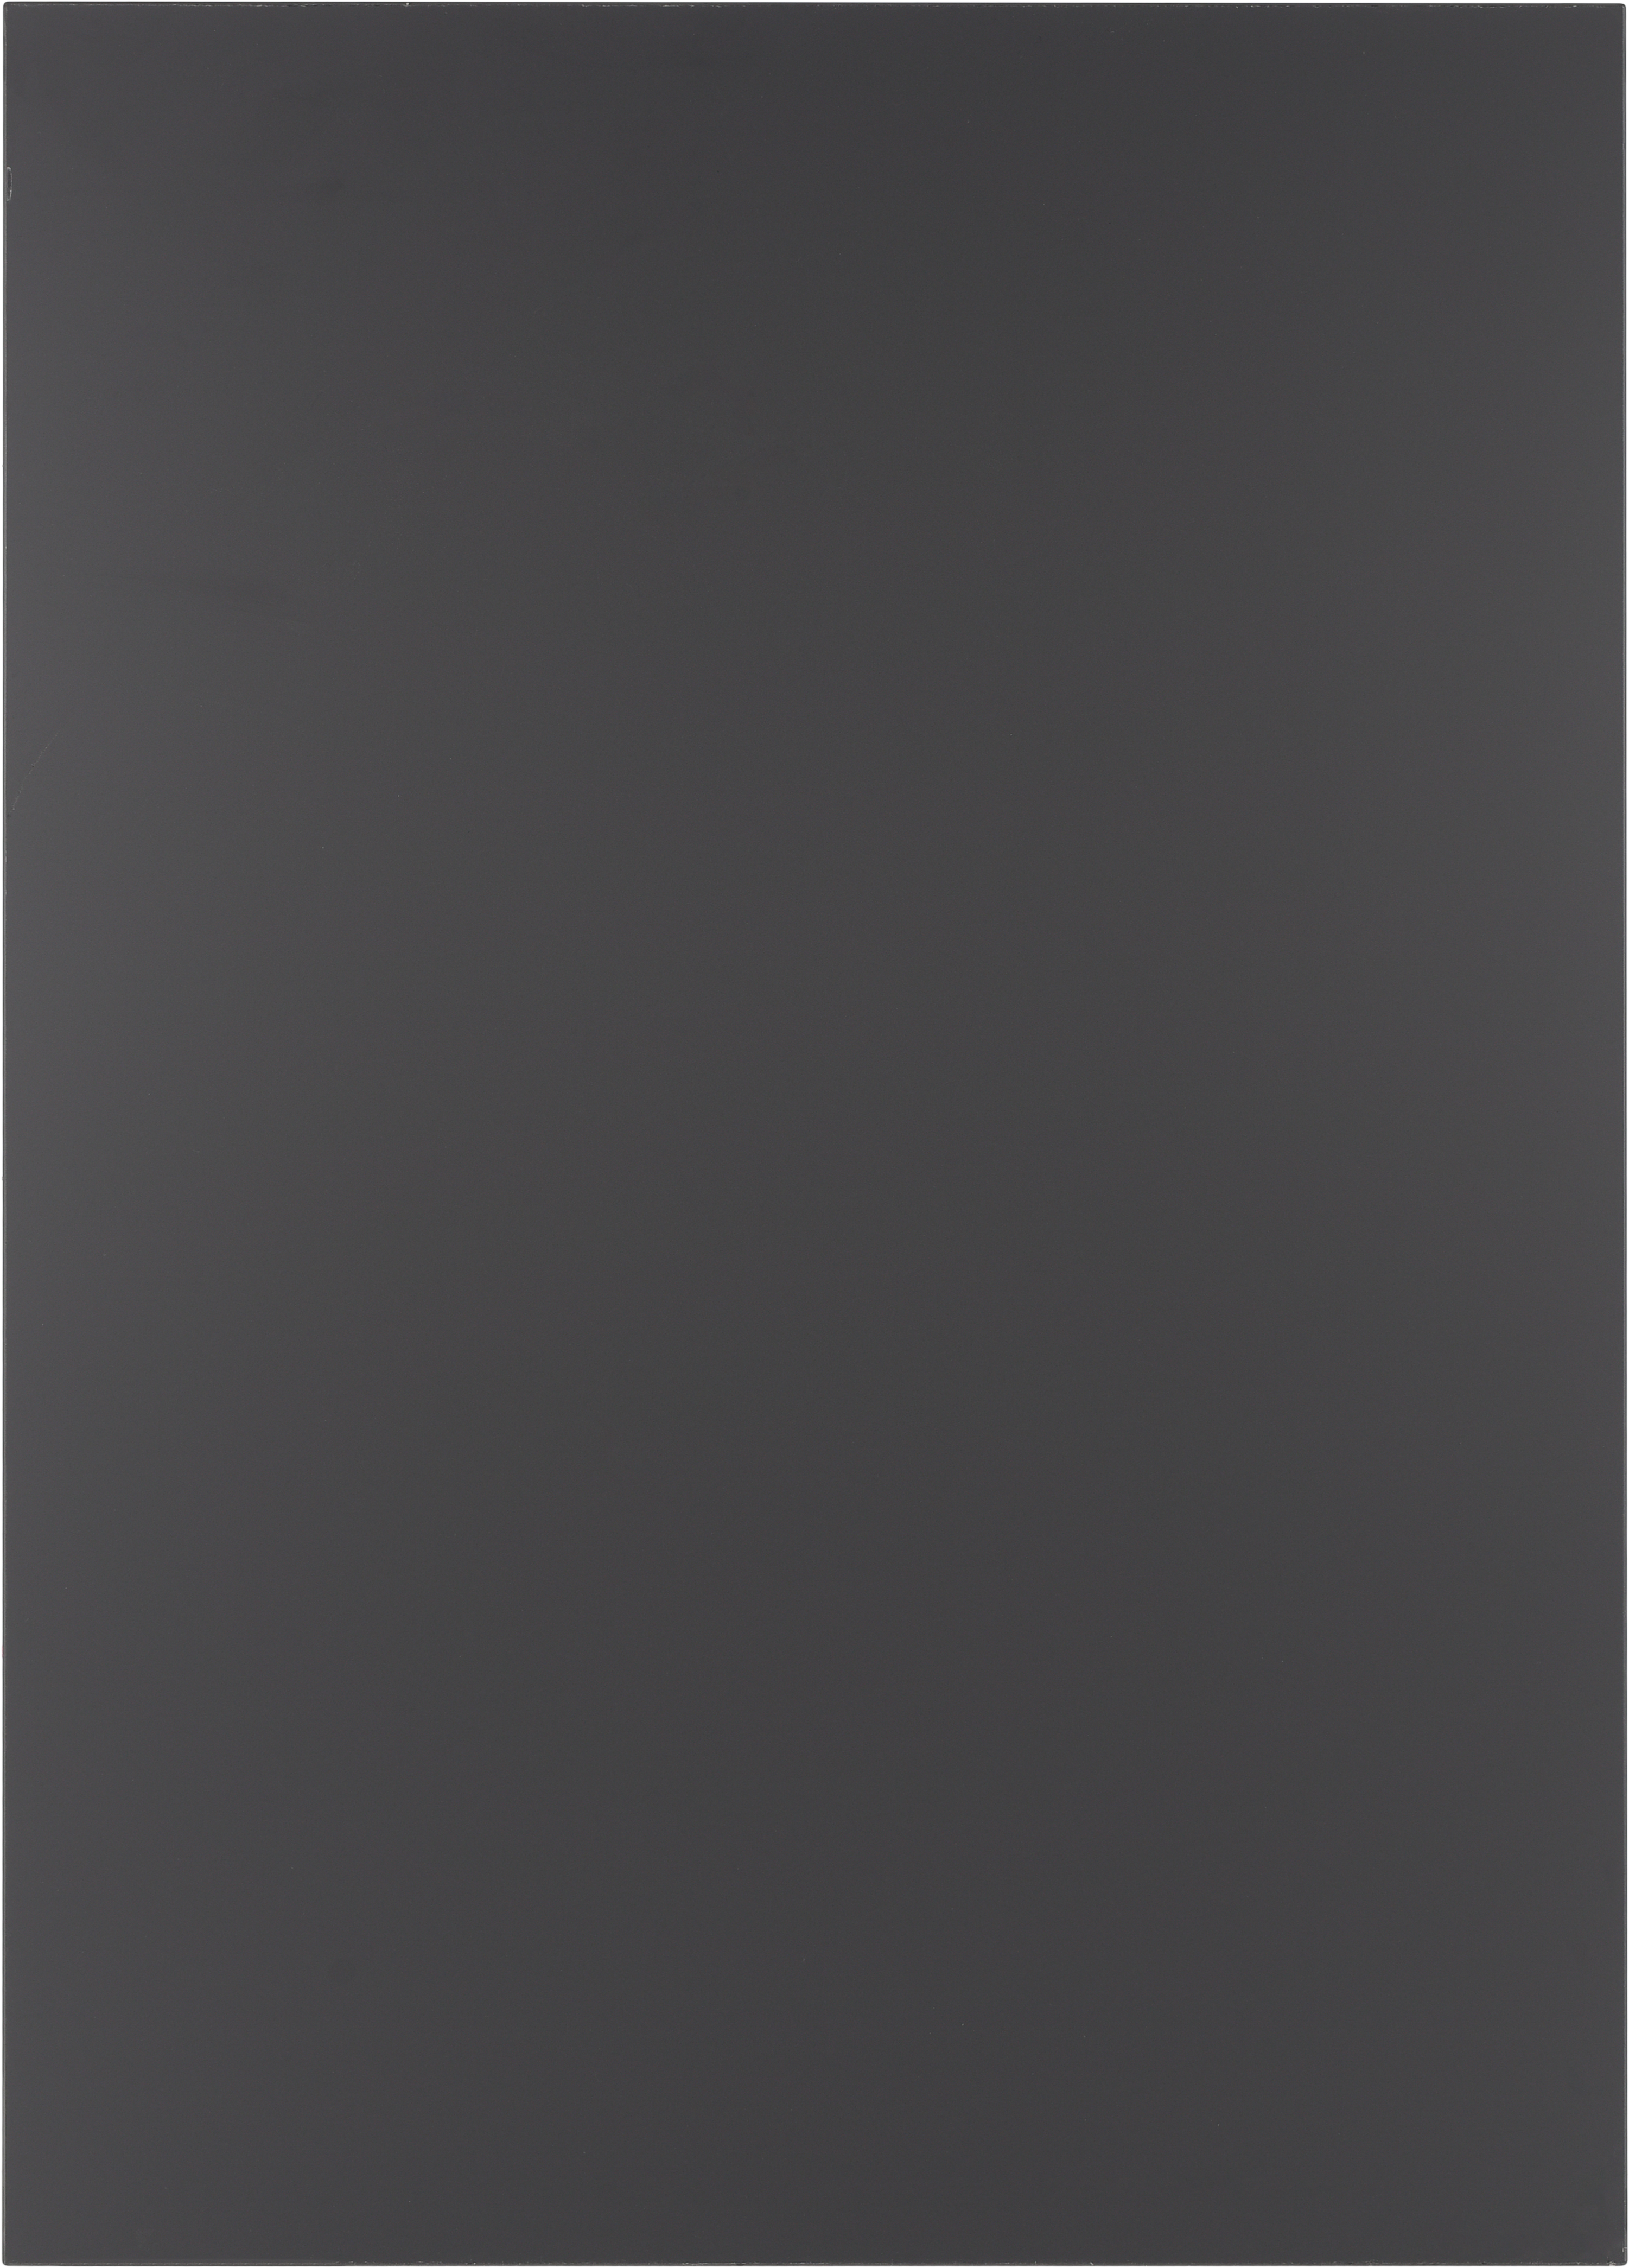 Puerta para mueble de cocina atenas antracita brillo h 64 x l 45 cm